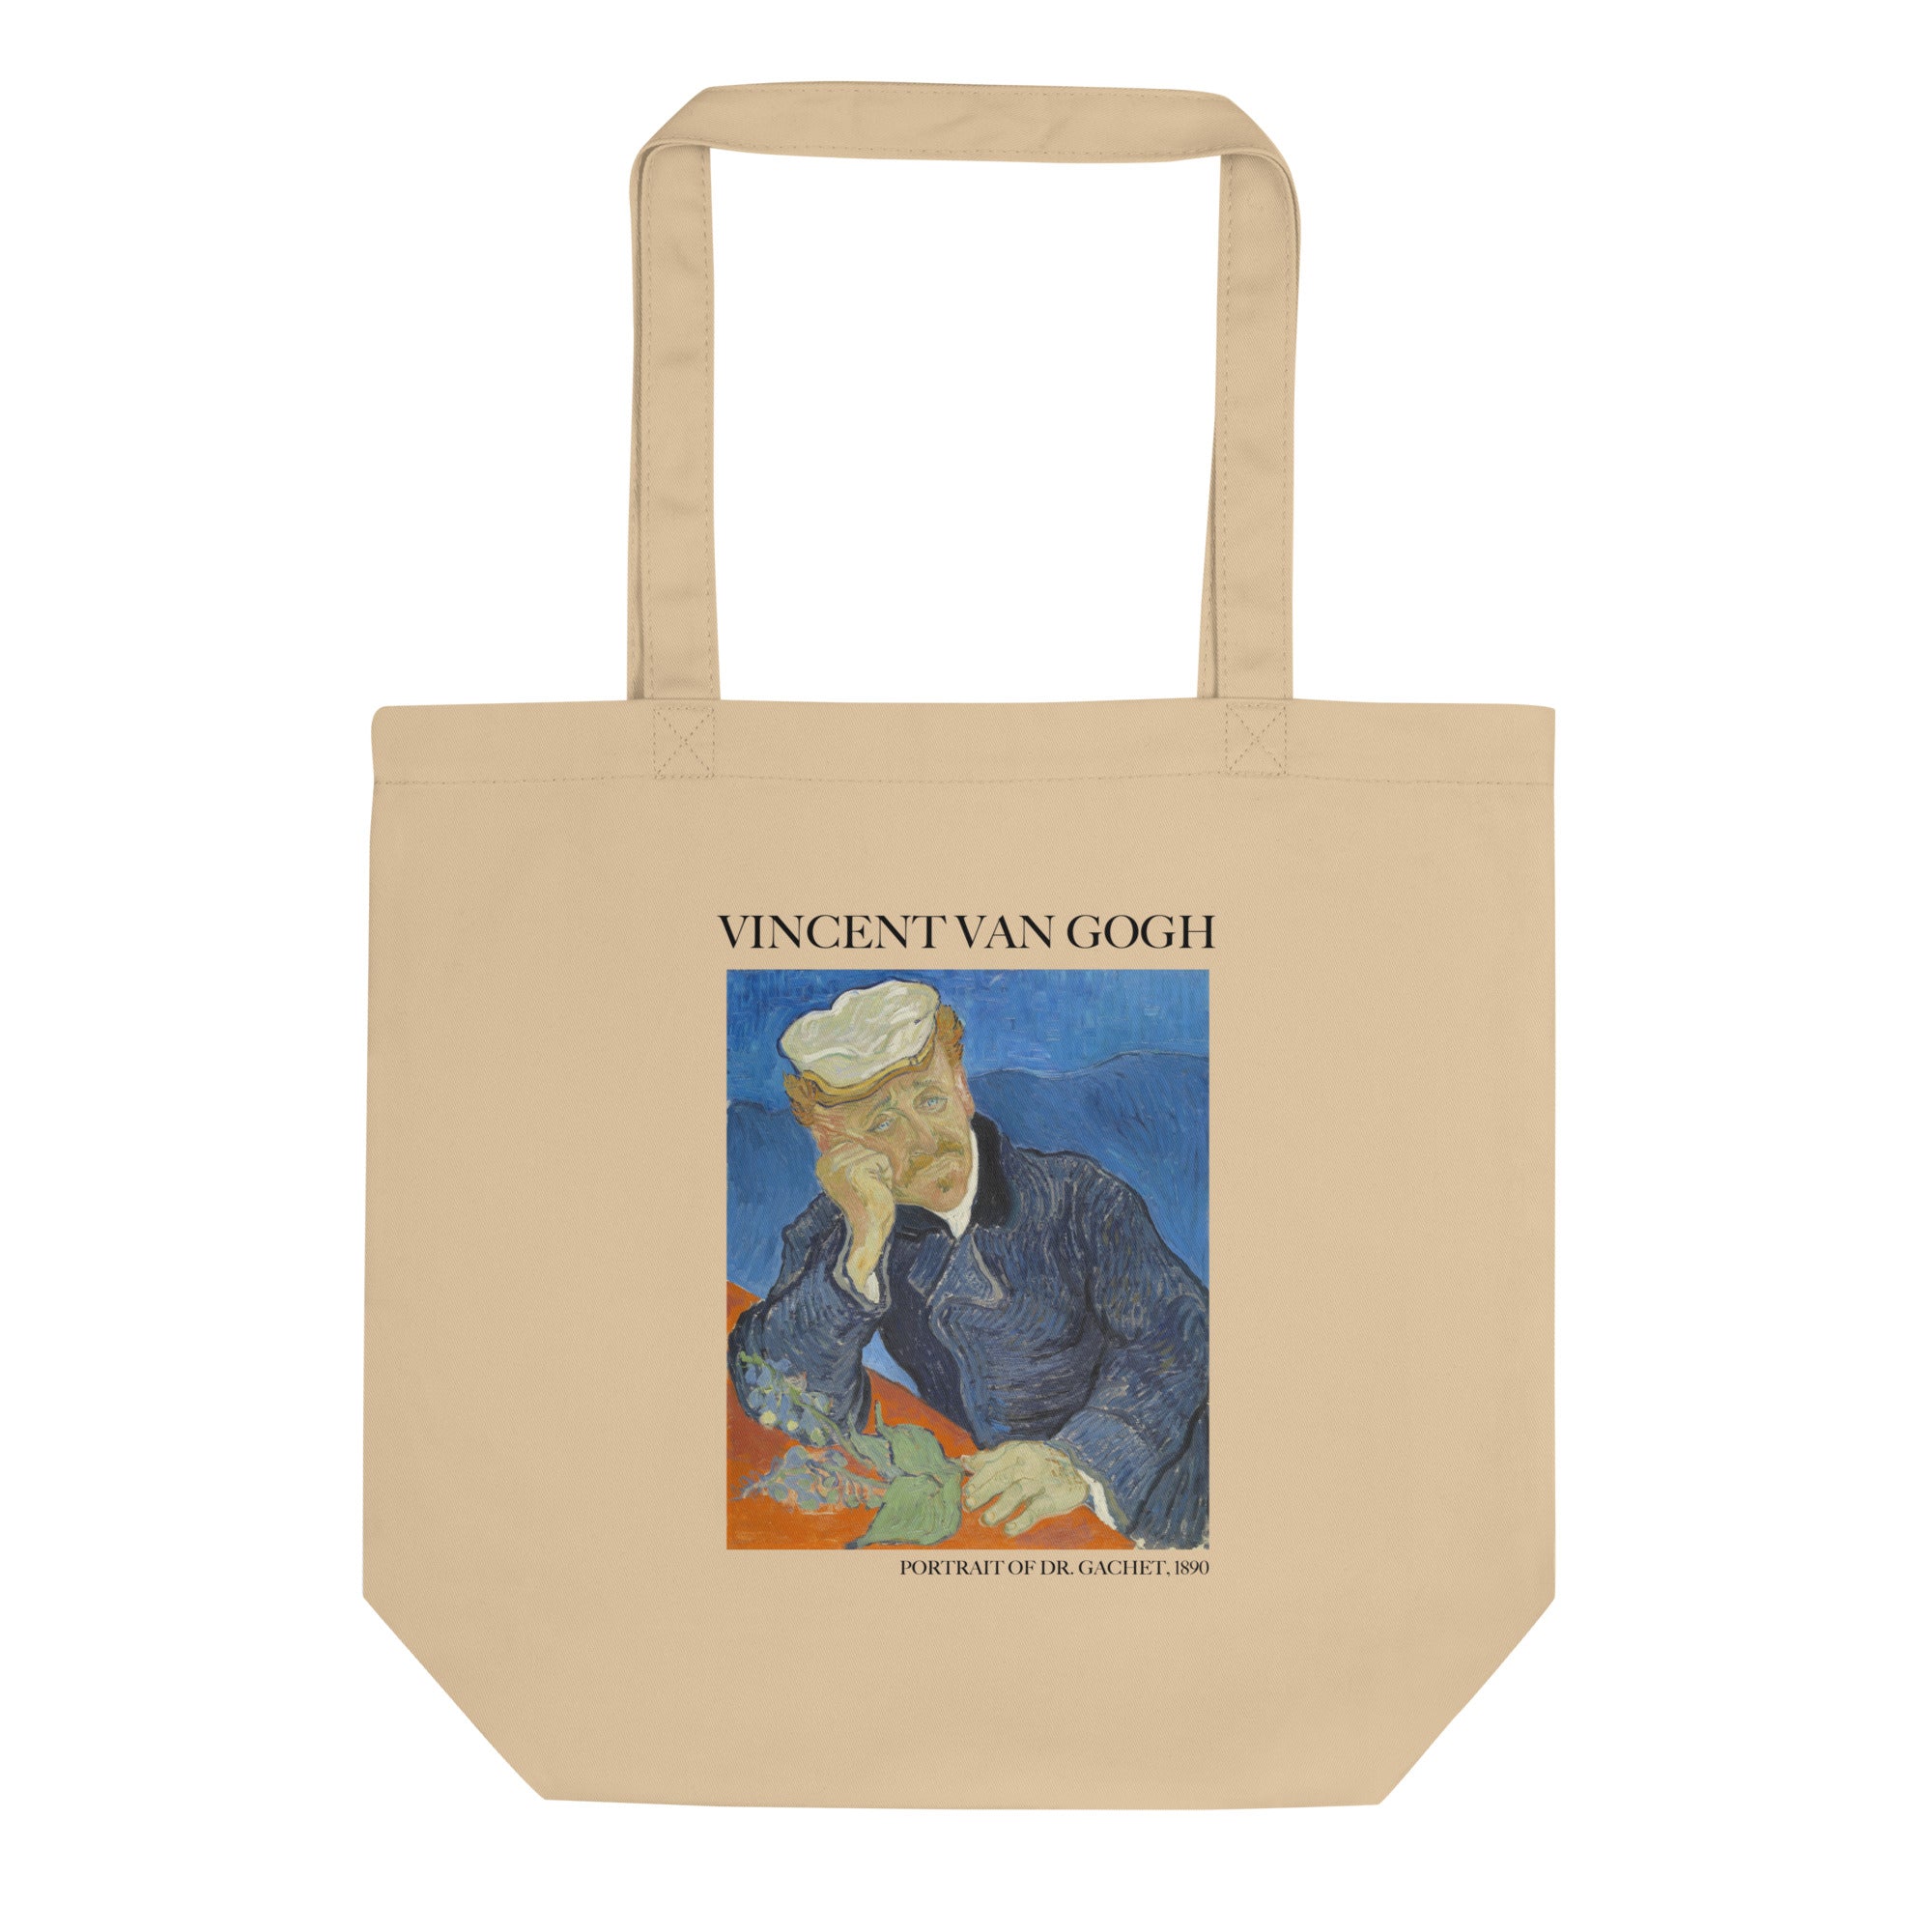 Vincent van Gogh 'Portrait of Dr. Gachet' Famous Painting Totebag | Eco Friendly Art Tote Bag